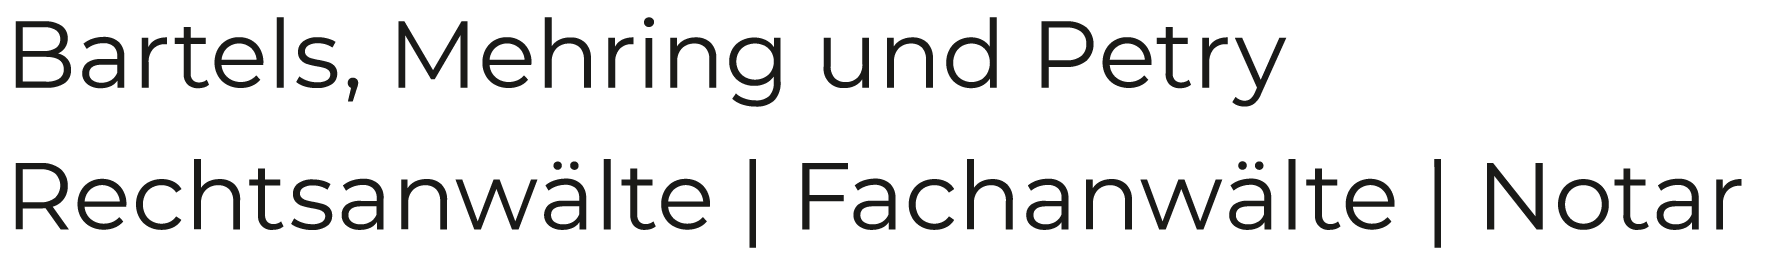 Rechtsanwälte, Fachanwälte und Notar in Hannover | Kanzlei - Logo